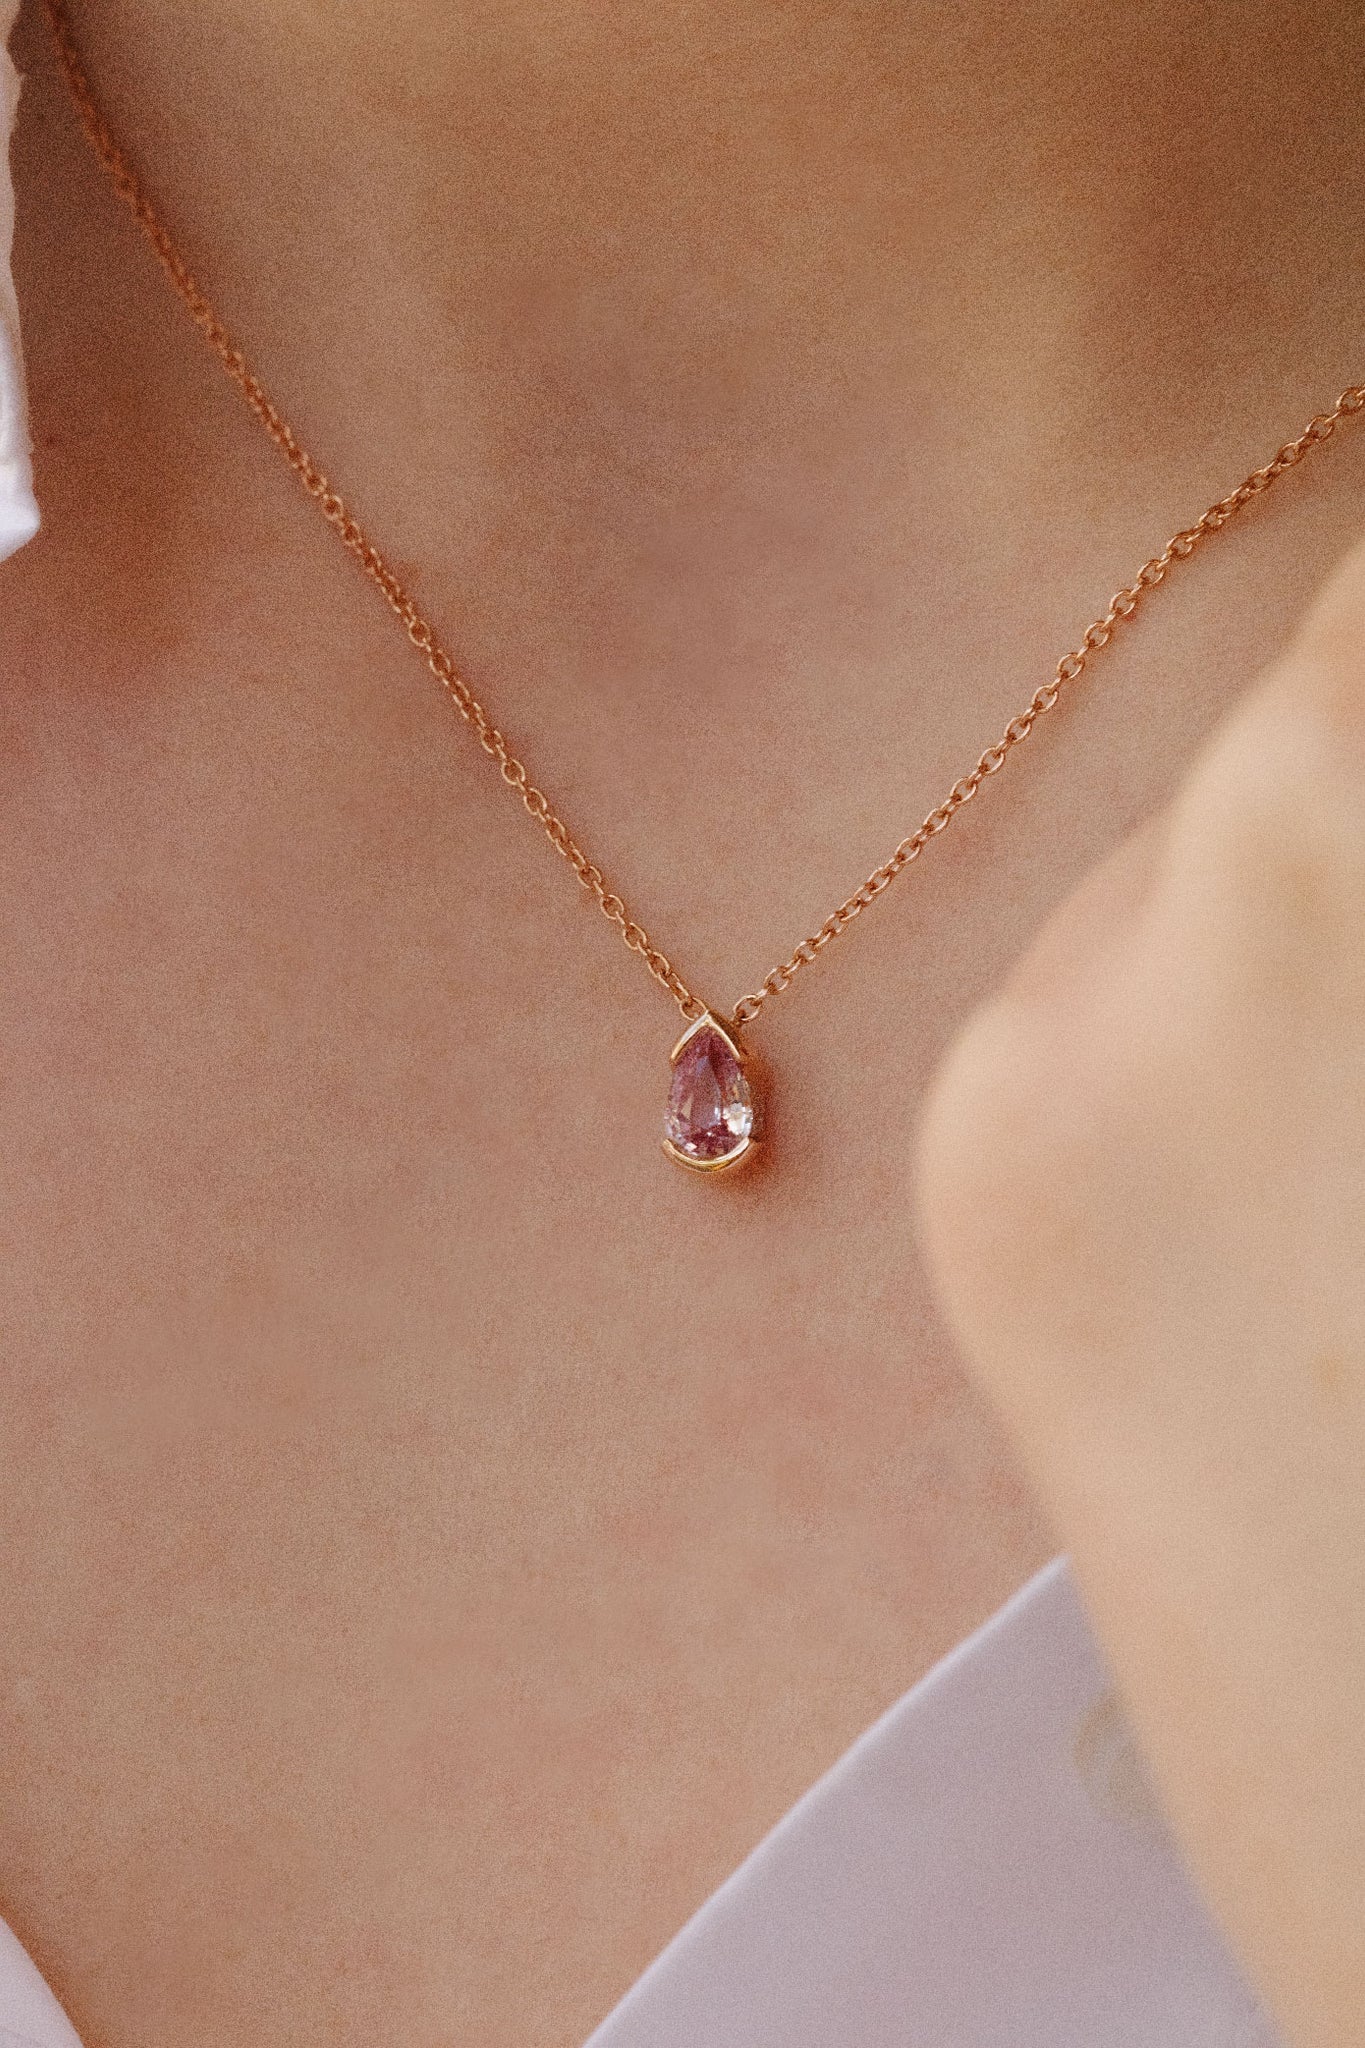 Photo porté d'un collier en or rose orné d'un pendentif en forme de goutte. La pierre centrale est un saphir rose.